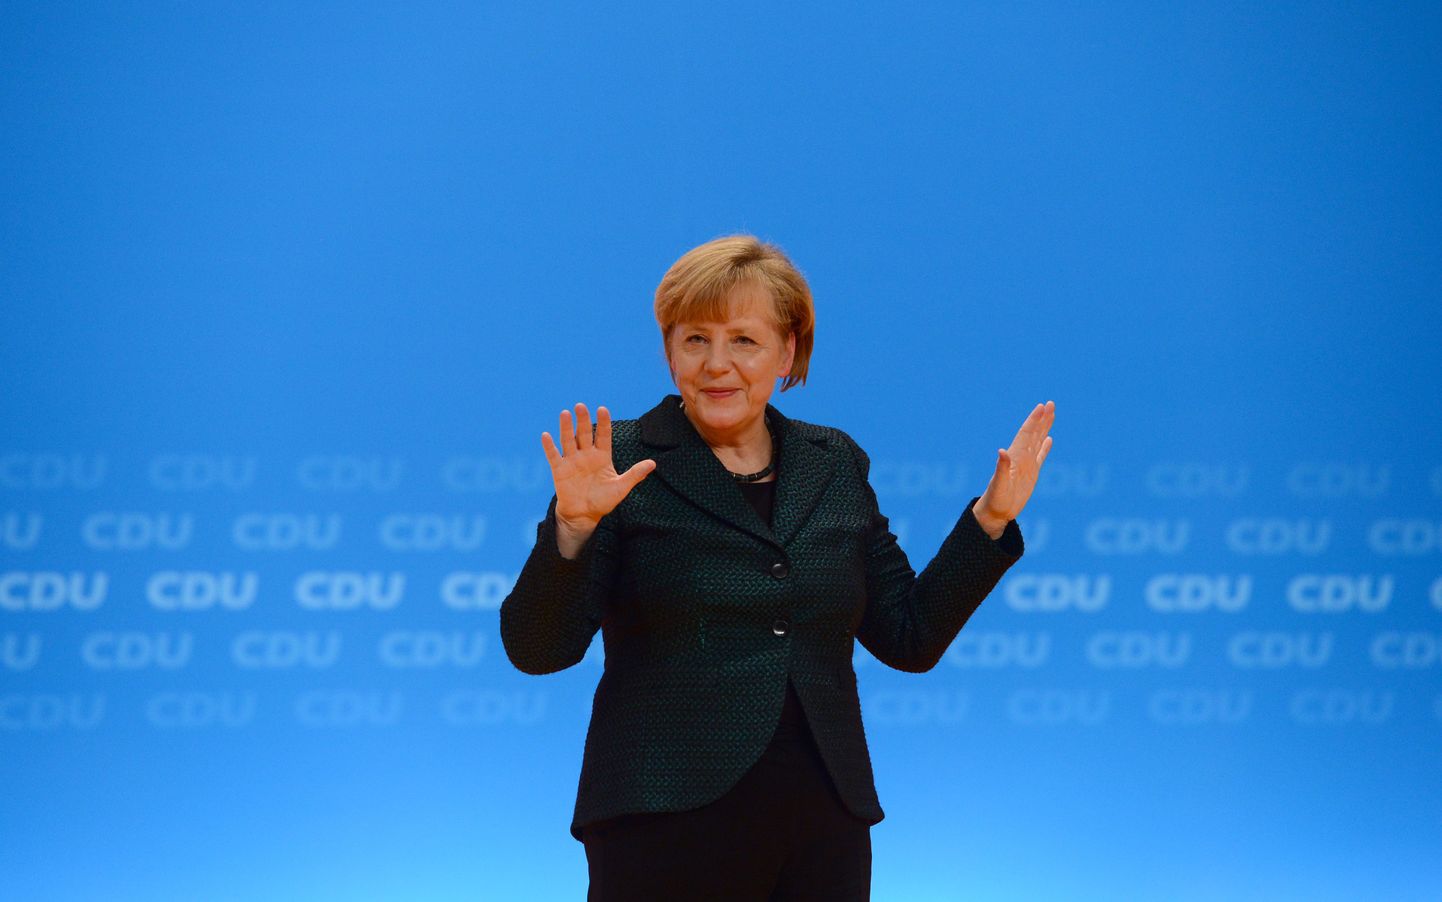 Saksa valitsus eitab valmisolekut Kreekale kui euroala liikmele «käega lüüa».